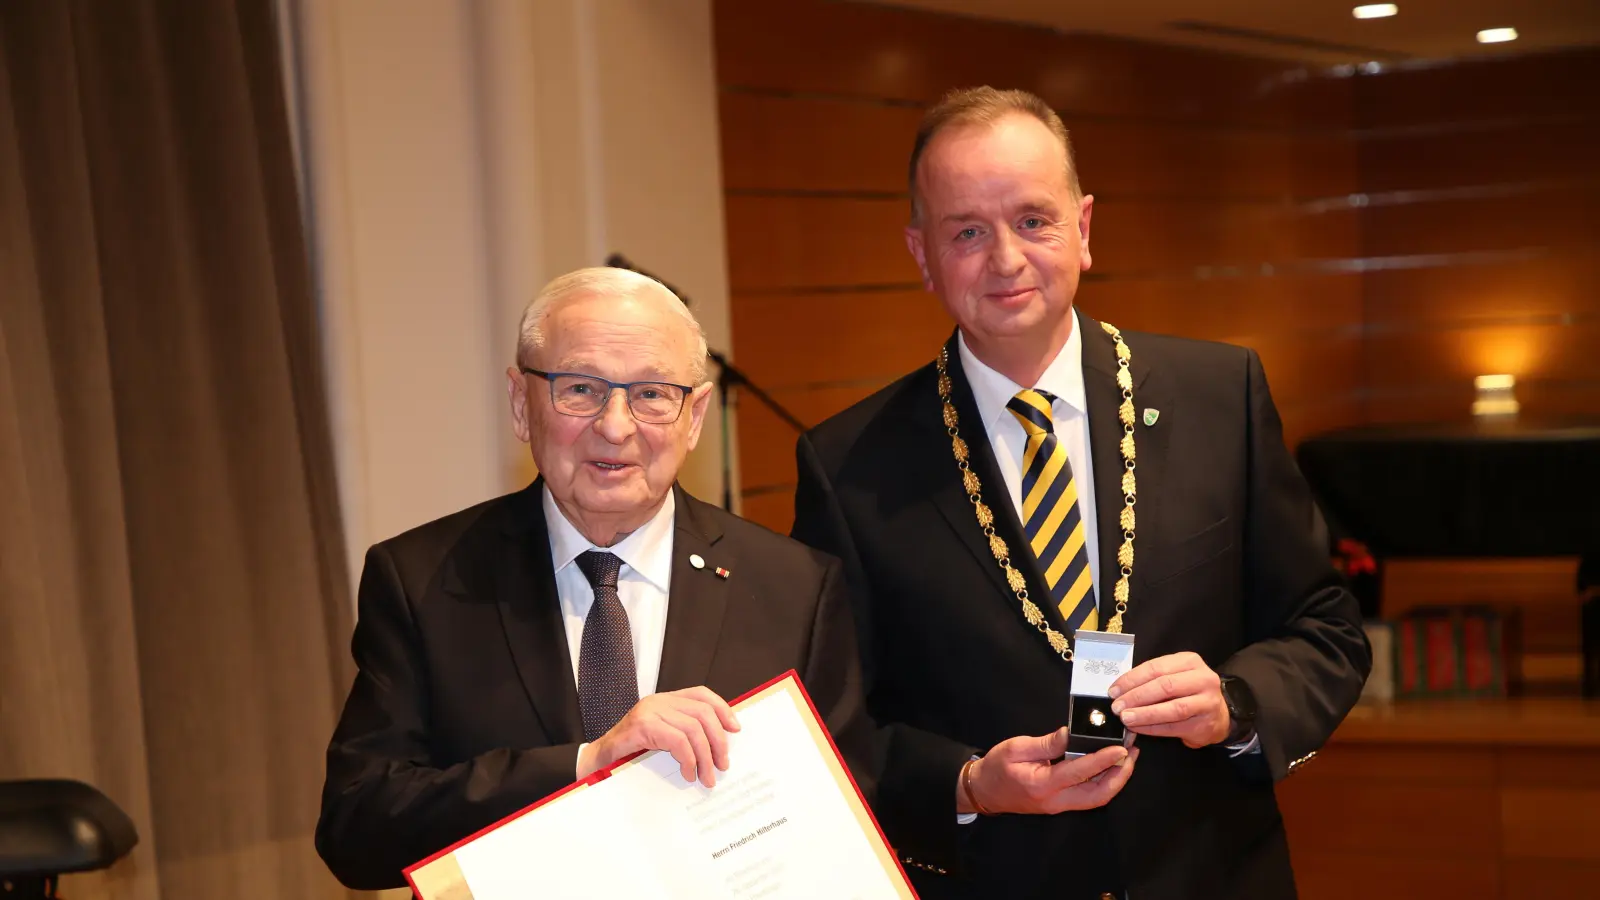 Aus den Händen von OB Thomas Deffner (rechts) erhielt Friedrich Hilterhaus den Ehrenbürgerbrief und den Ehrenbürgerring der Stadt. (Foto: Alexander Biernoth)